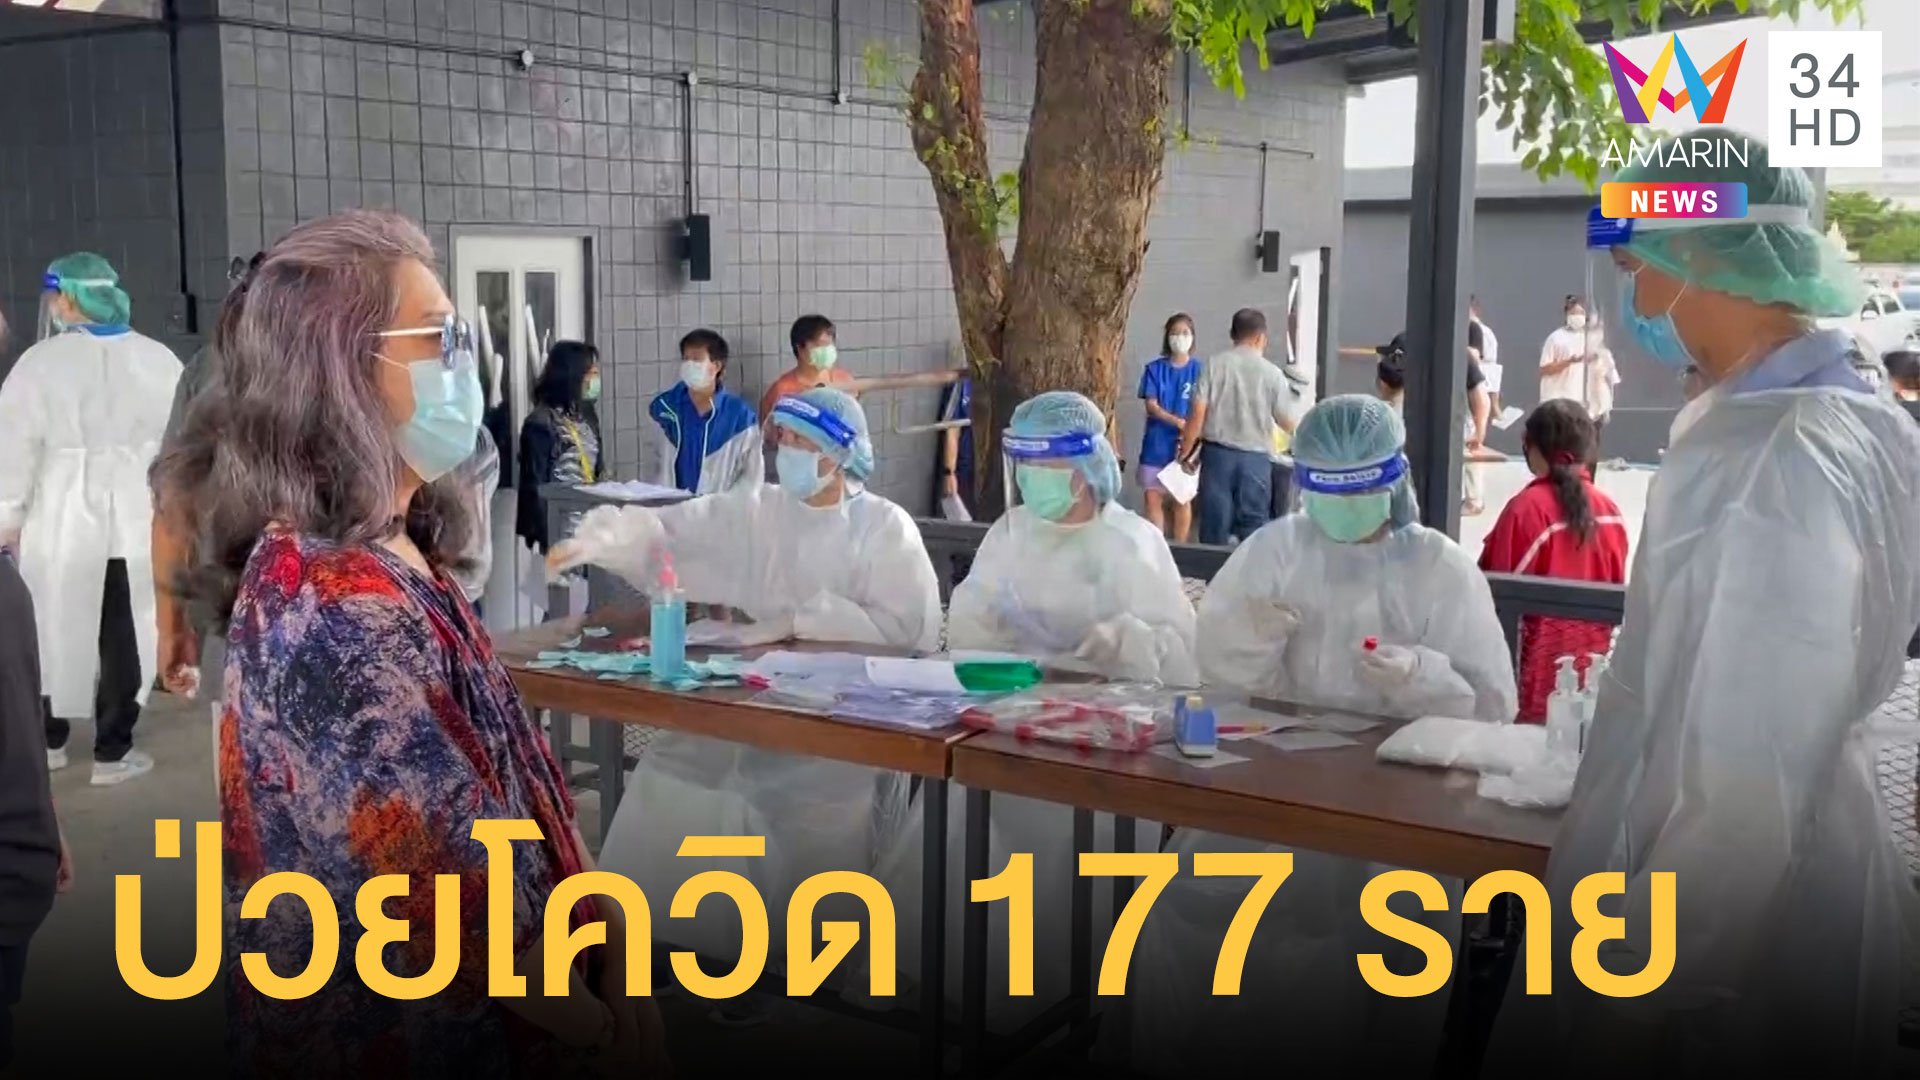 โรงงานบางเสาธงวุ่น คนงานป่วยโควิด 177 ราย | ข่าวเที่ยงอมรินทร์ | 15 พ.ค. 64 | AMARIN TVHD34